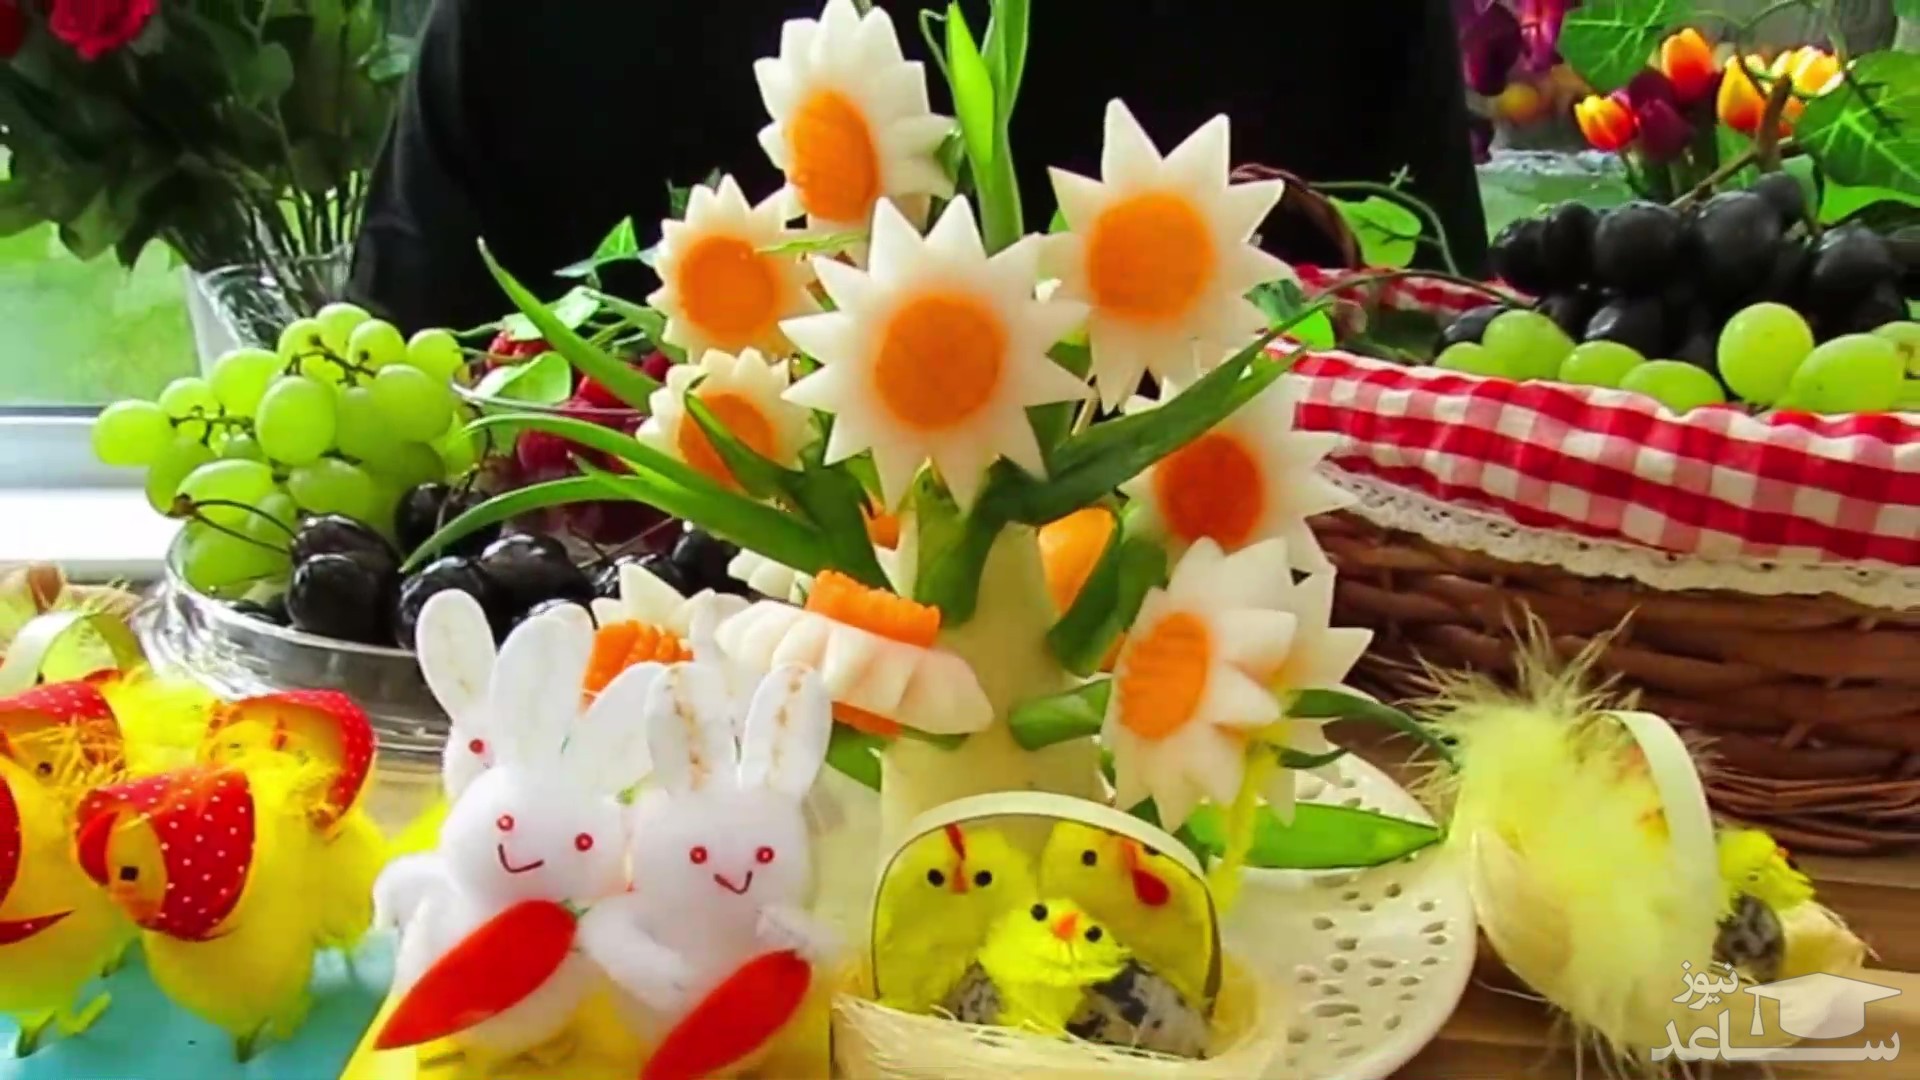 (ویدیو) تزیین سبزیجات ترب با هویج به شکل گل مخصوص سفره آرایی